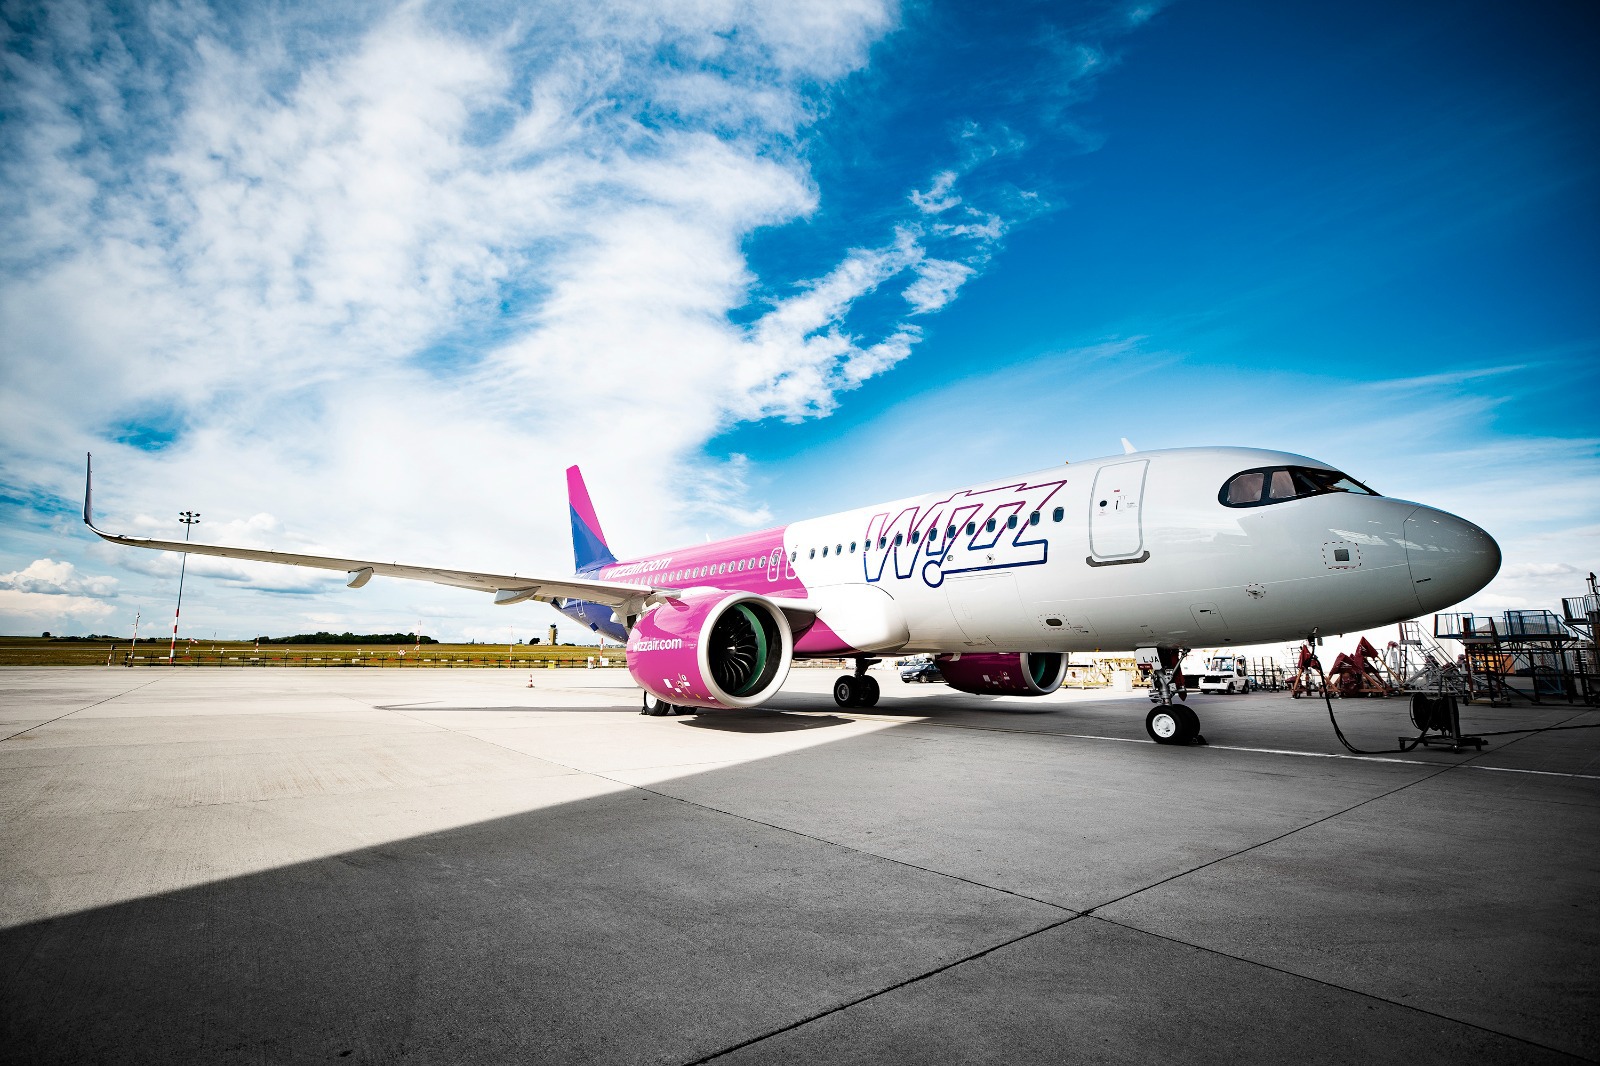 Wizz Air are cea mai mare bază aeriană din reţea în Bucureşti şi 20% din angajaţi sunt români. Ce a mai rămas ungar din compania aeriană? Media lunară a zborurilor este de 2.400 dinspre şi înspre Bucureşti şi 2.000 de la Budapesta.